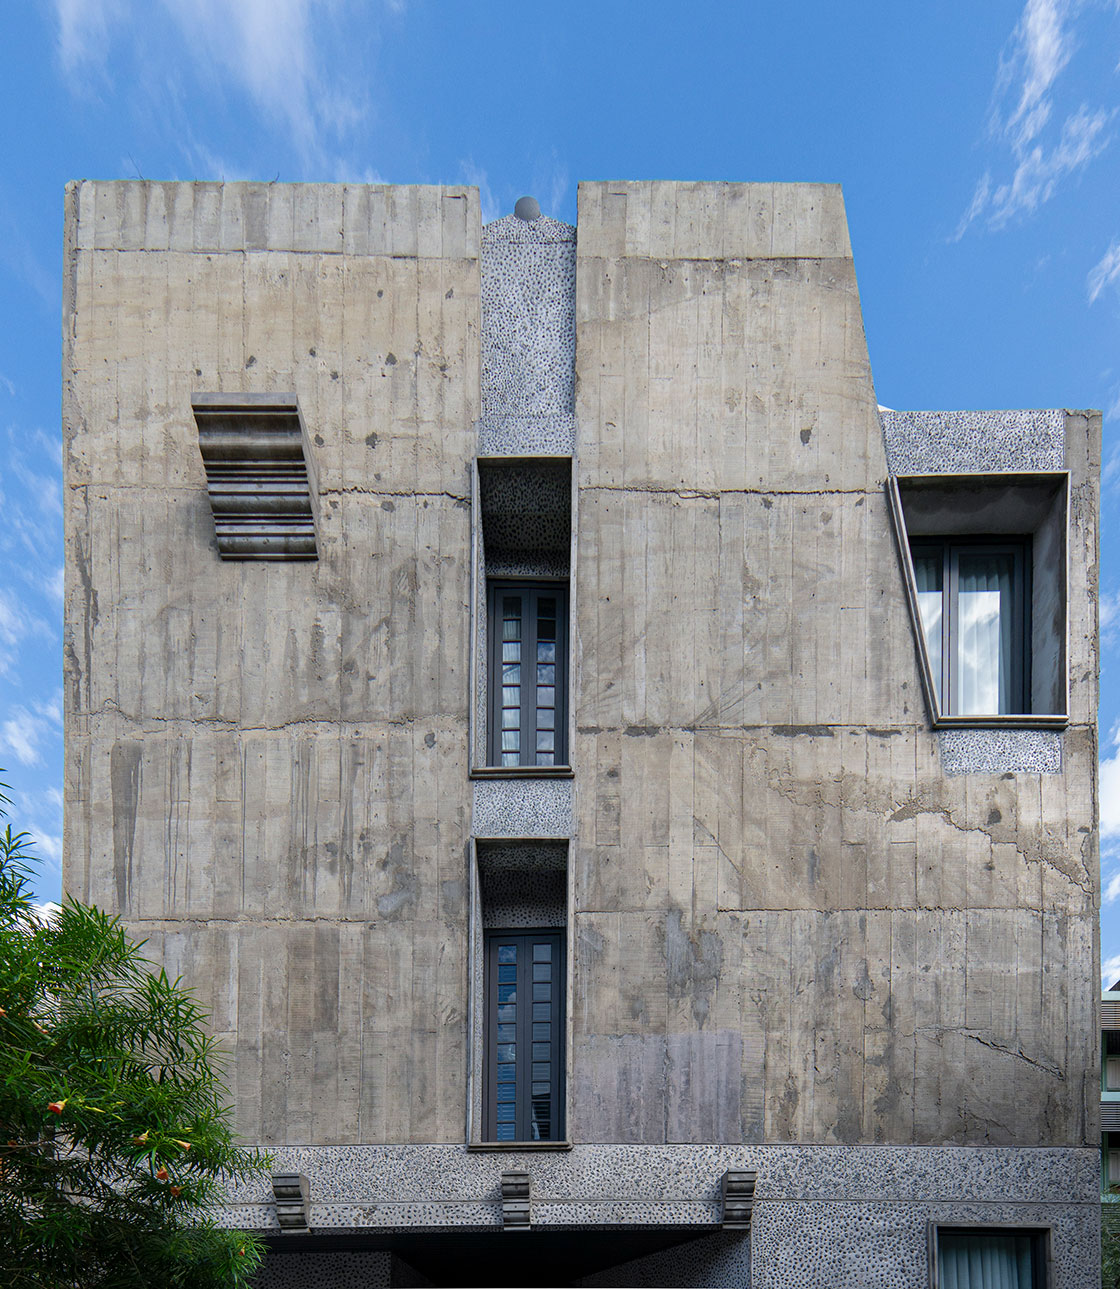 อาคารสไตล์ Brutalism แต่ contrast ด้วยชิ้นส่วนขอบปูนปั้นสไตล์โรแมนติกที่ทำไว้ให้นกเกาะ